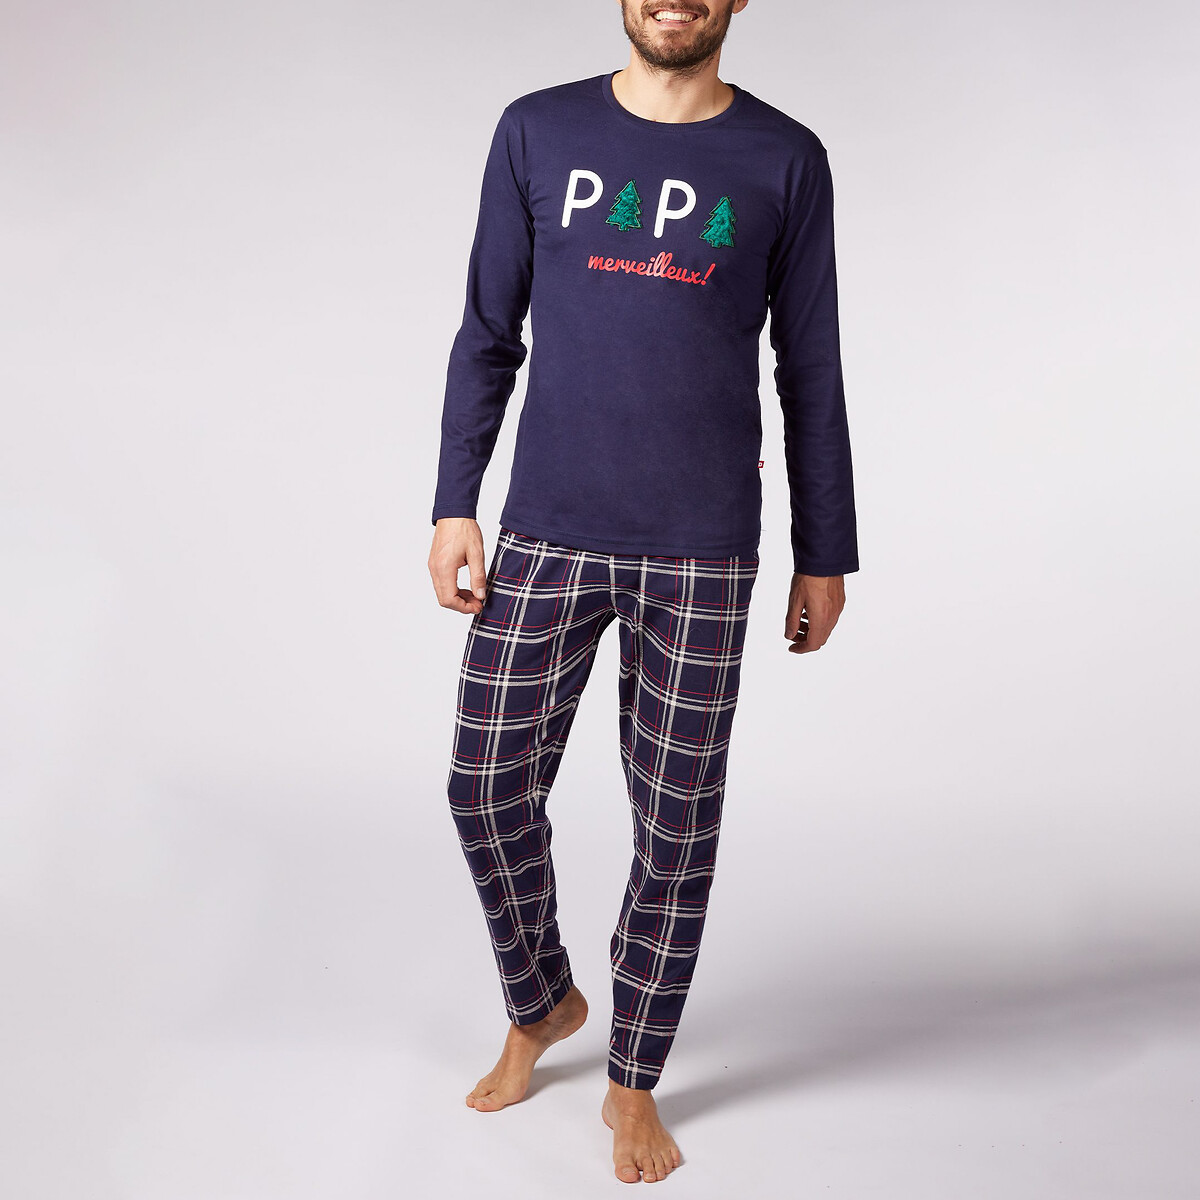 Пижама DODO Пижама С длинными рукавами и брюками с принтом Papa XL синий, размер XL - фото 1